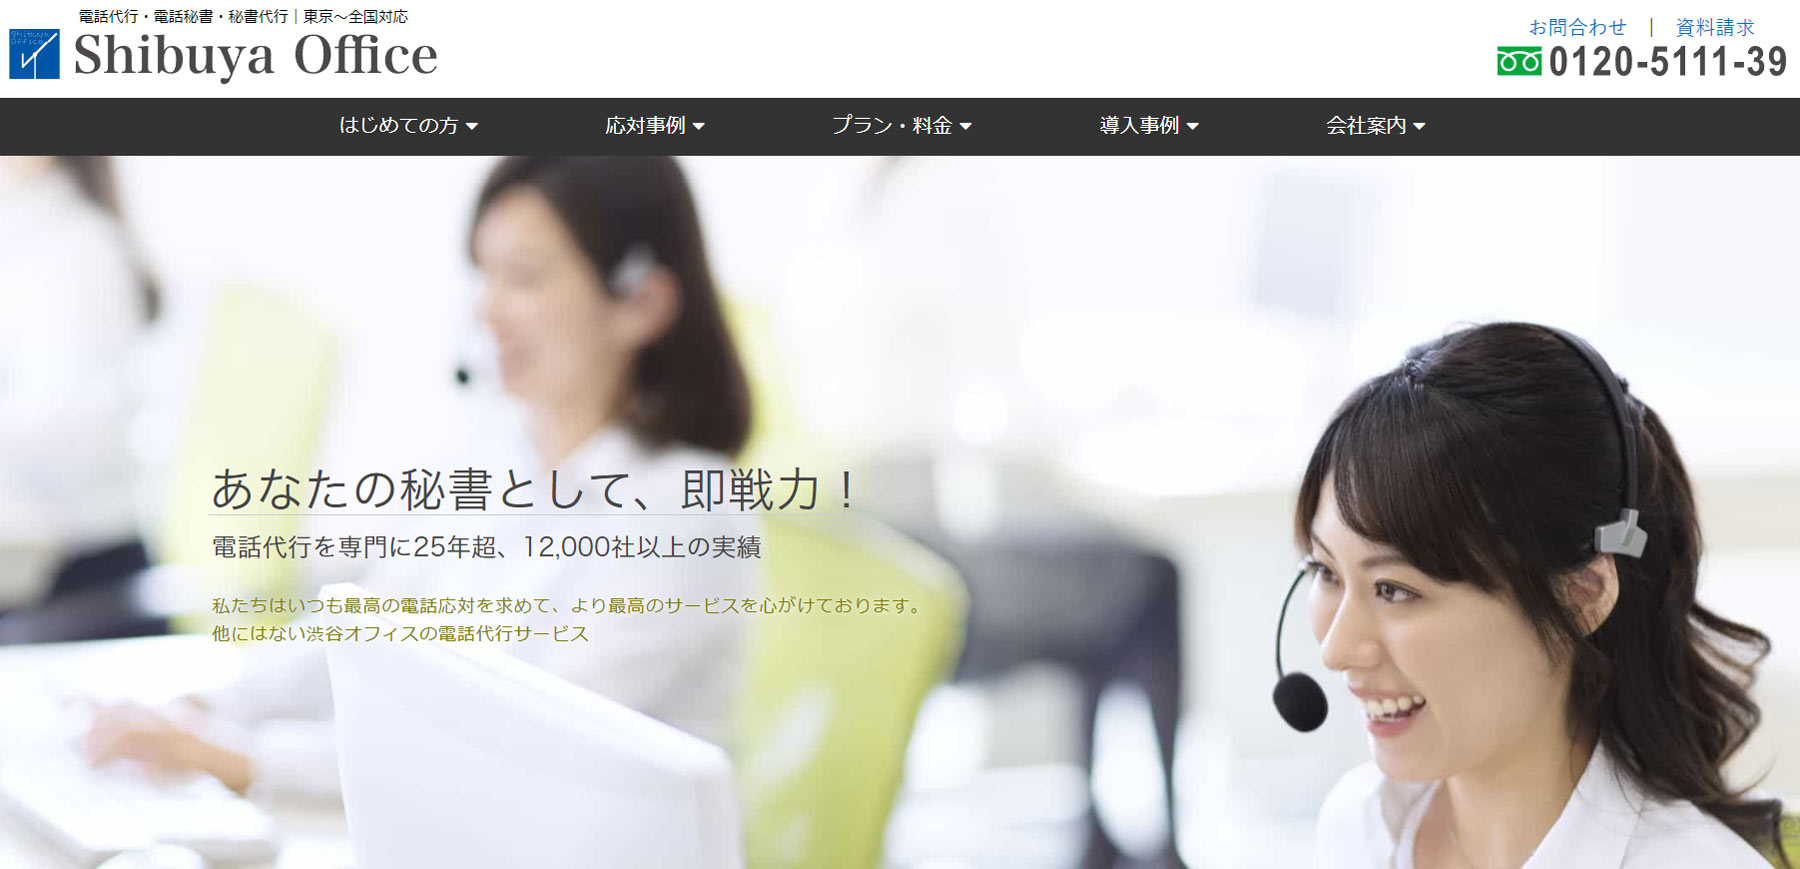 渋谷オフィス公式Webサイト